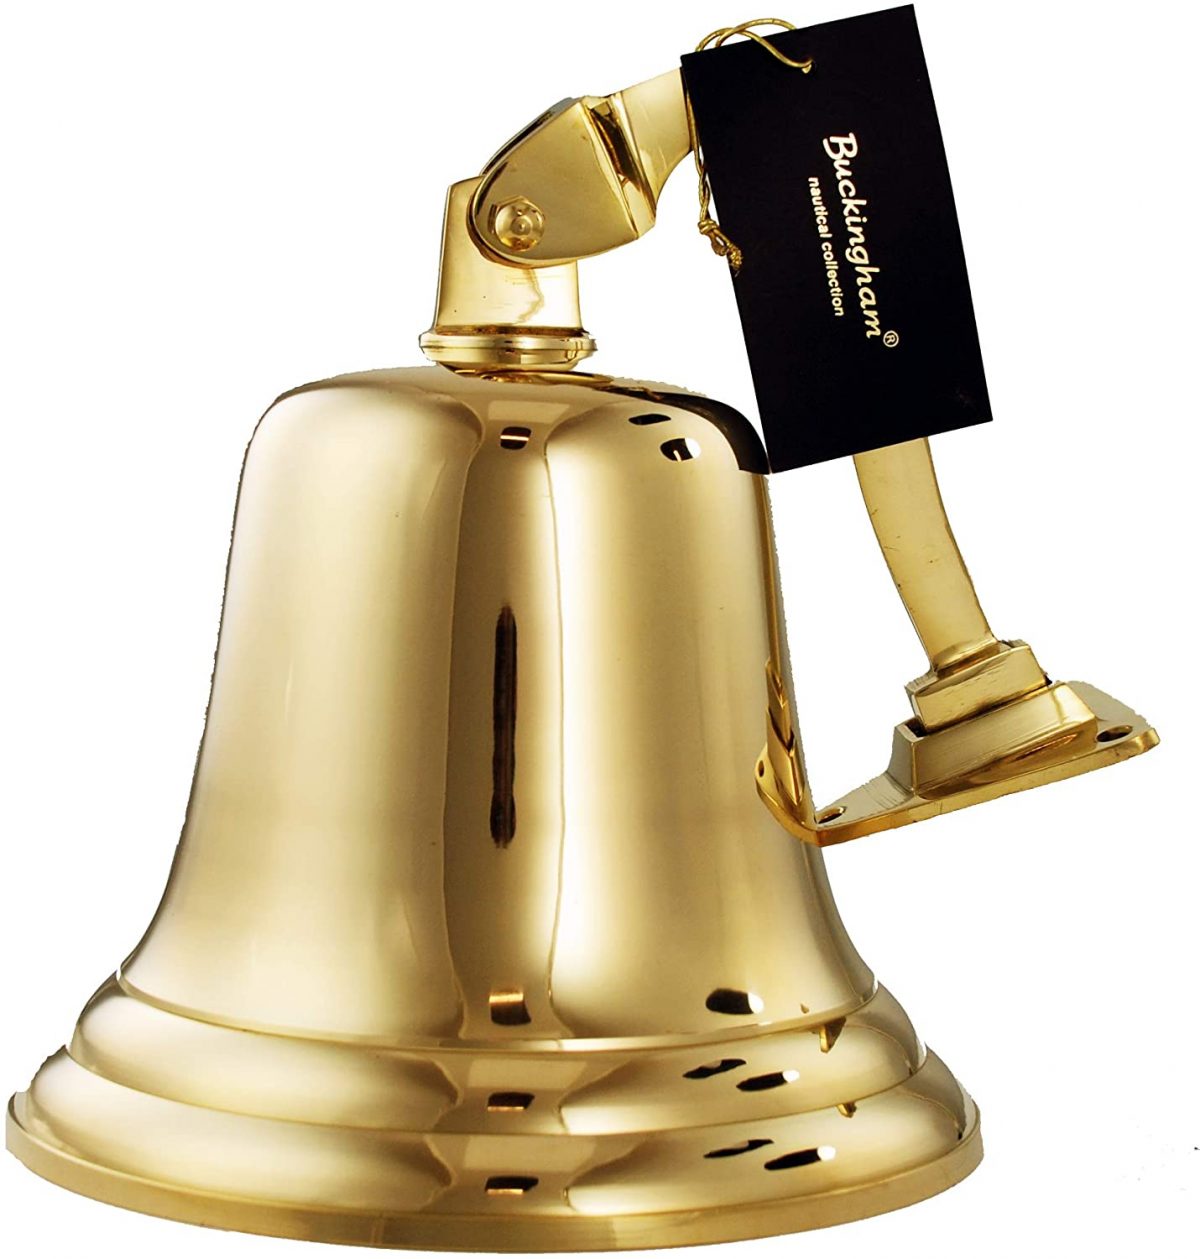 Nagina International Buckingam Palace Nautical Brass Polished Boat Bell Solid Brass Maritime Signature Bell